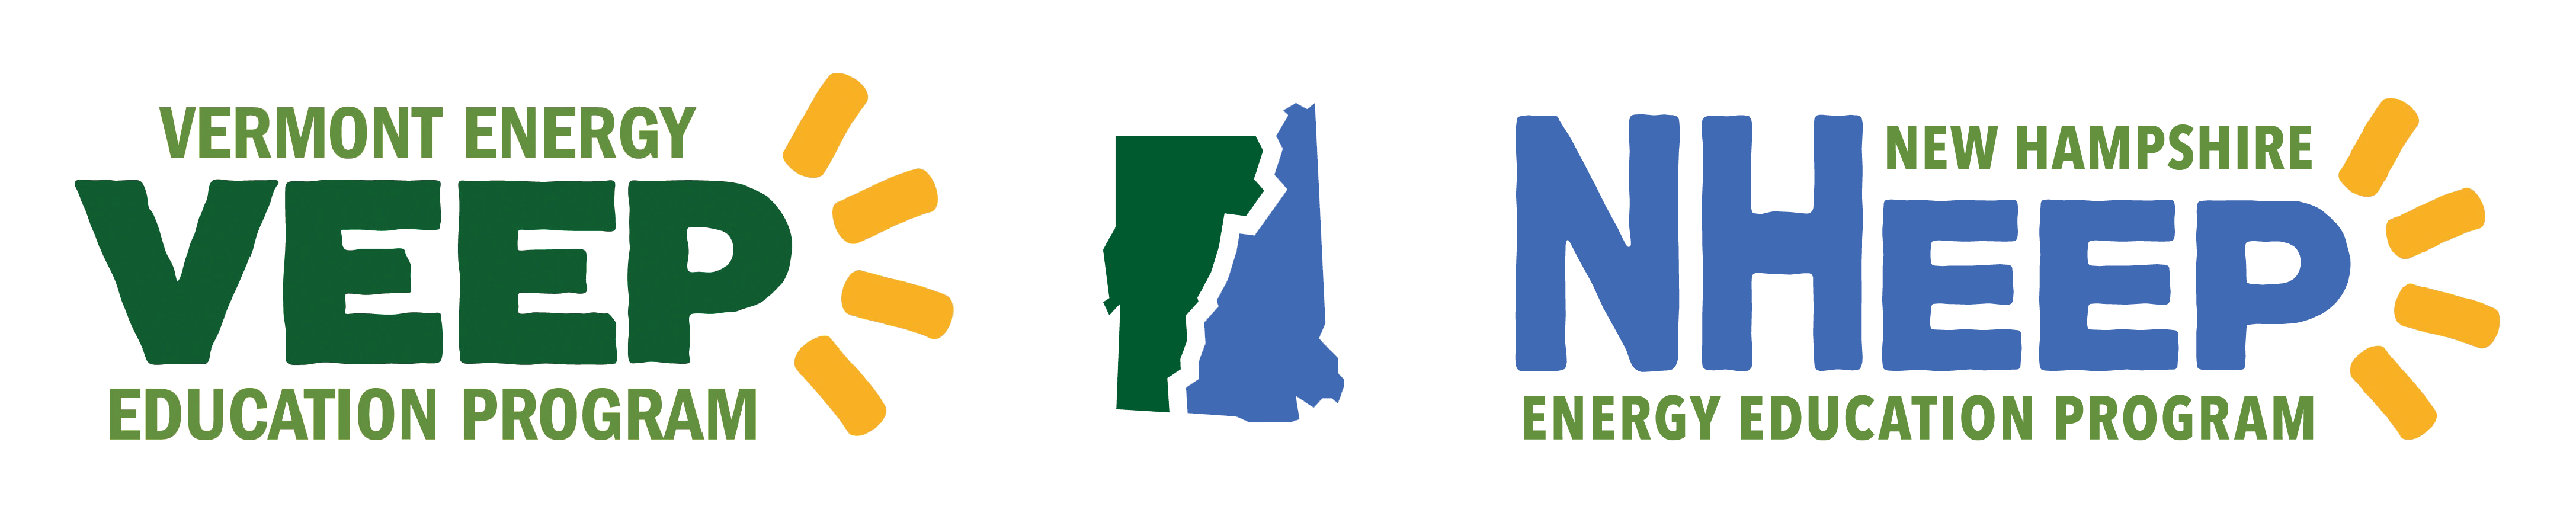 Vermont Energy Education Program